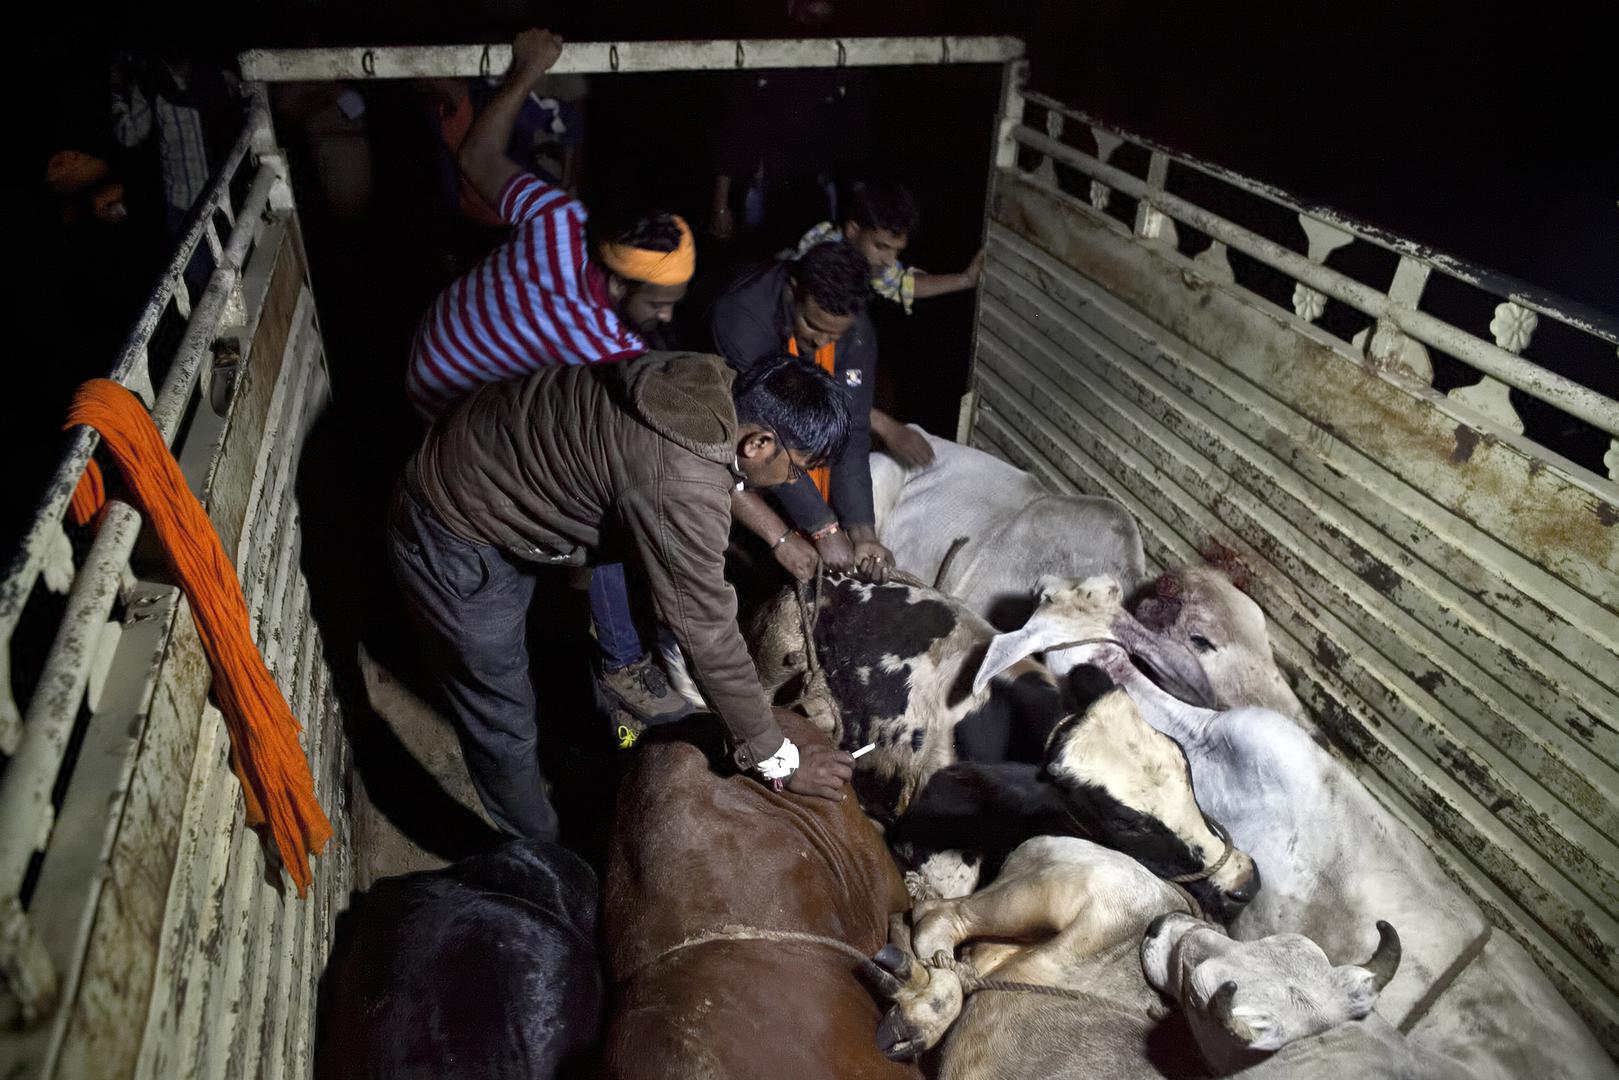 Des membres d'un groupe de « protection des vaches » s’apprêtent à confisquer des vaches transportées à l’arrière d’un camion par des commerçants de bétail à Ramgarh, dans l’État du Rajasthan en Inde, en novembre 2015.